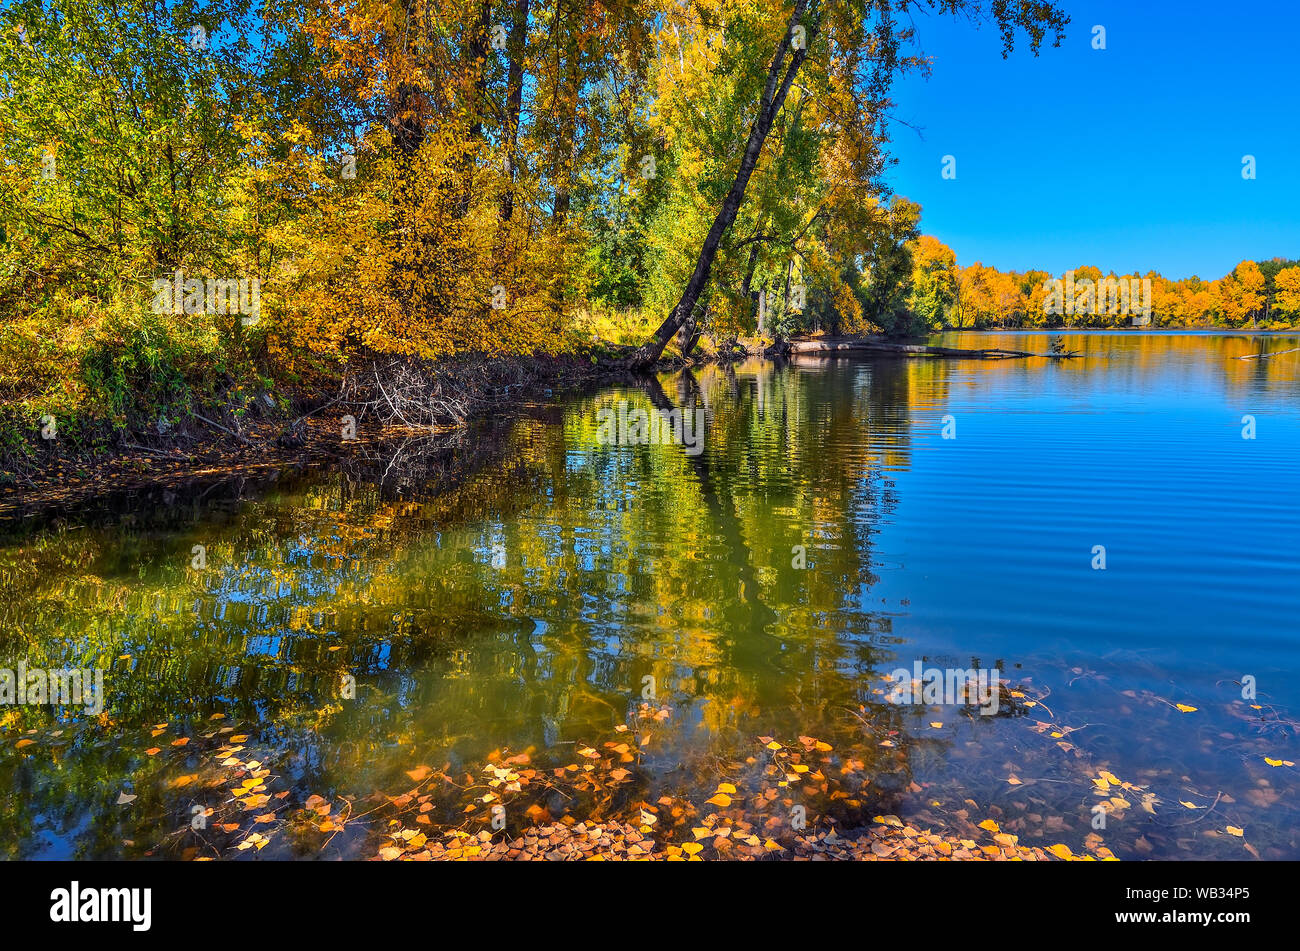 Goldene Laub Herbst Bäume rund um den See im blauen Wasser spiegelt - Herbst malerische Landschaft an warmen und sonnigen September Wetter mit blauem Himmel Stockfoto